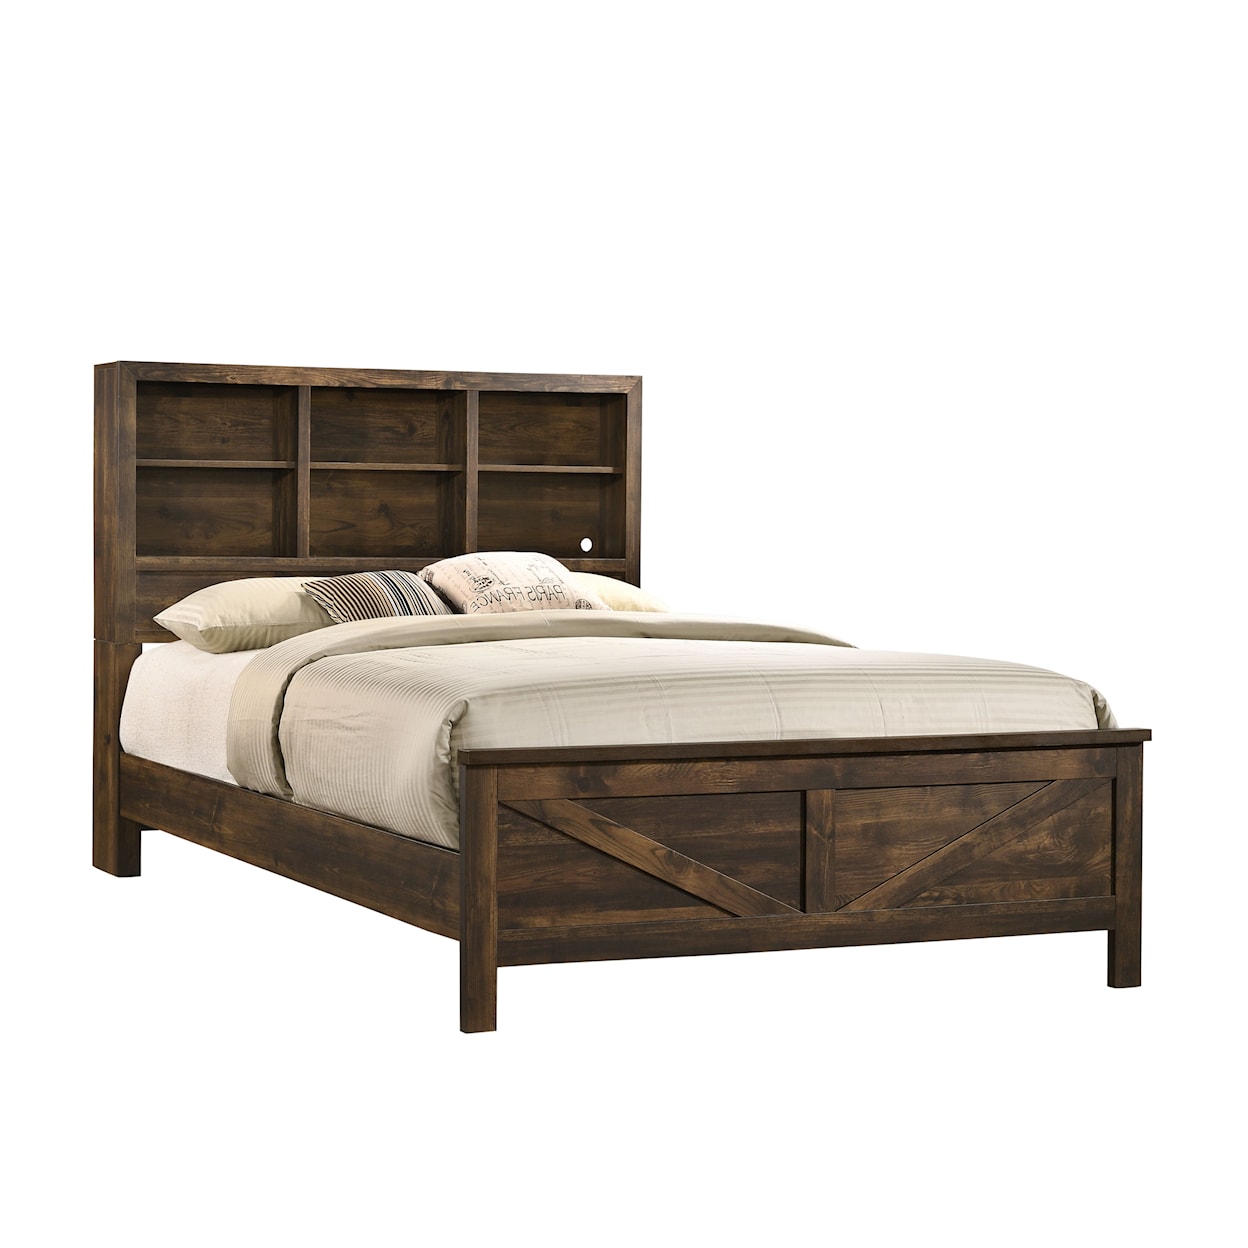 Lifestyle Rustic Oak RUSTIC OAK TWIN BED |